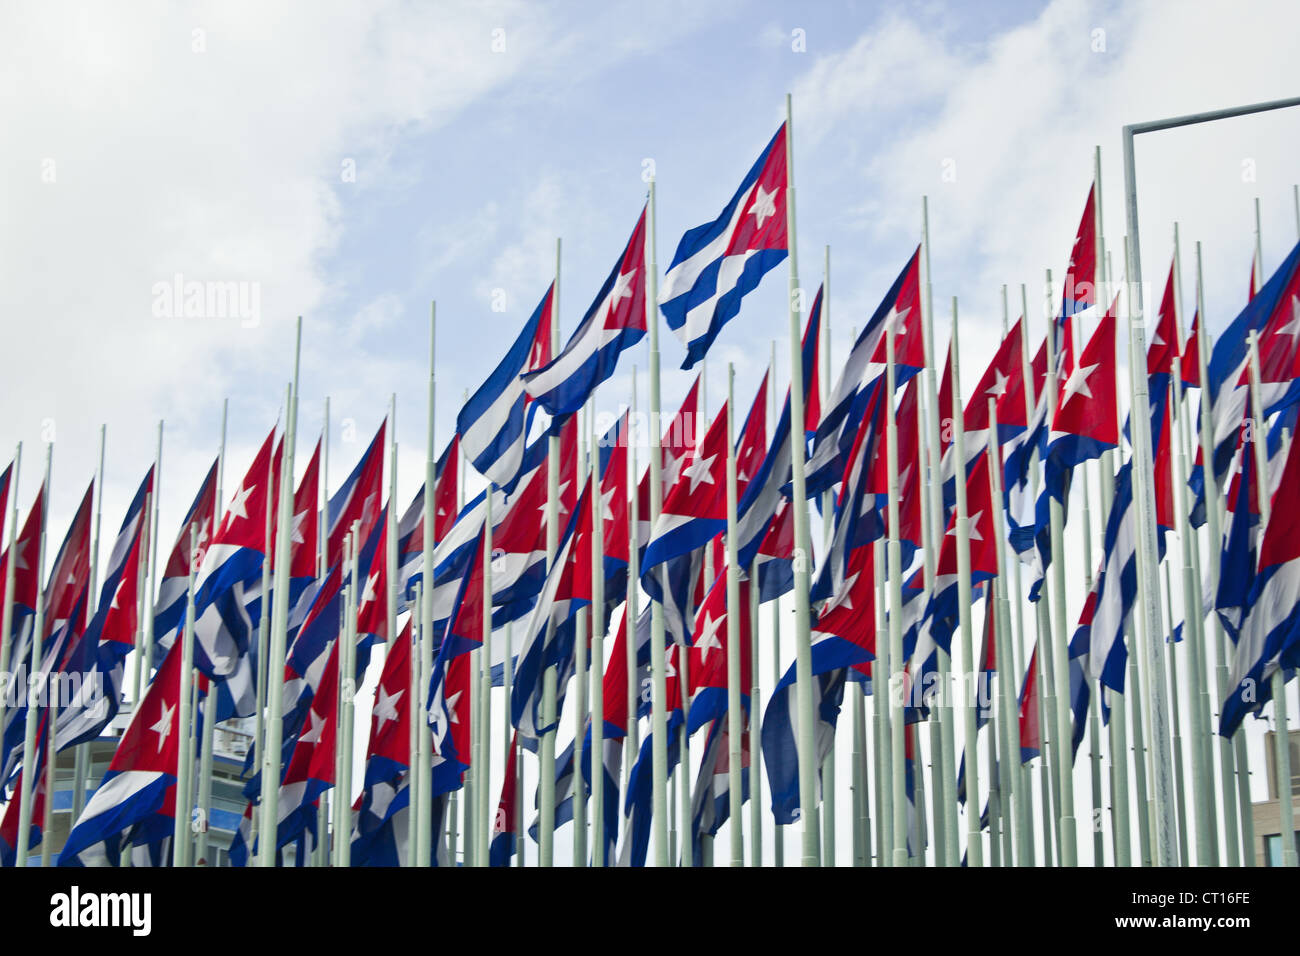 Gruppe von kubanischen Fahnen gegen blauen Himmel Stockfoto